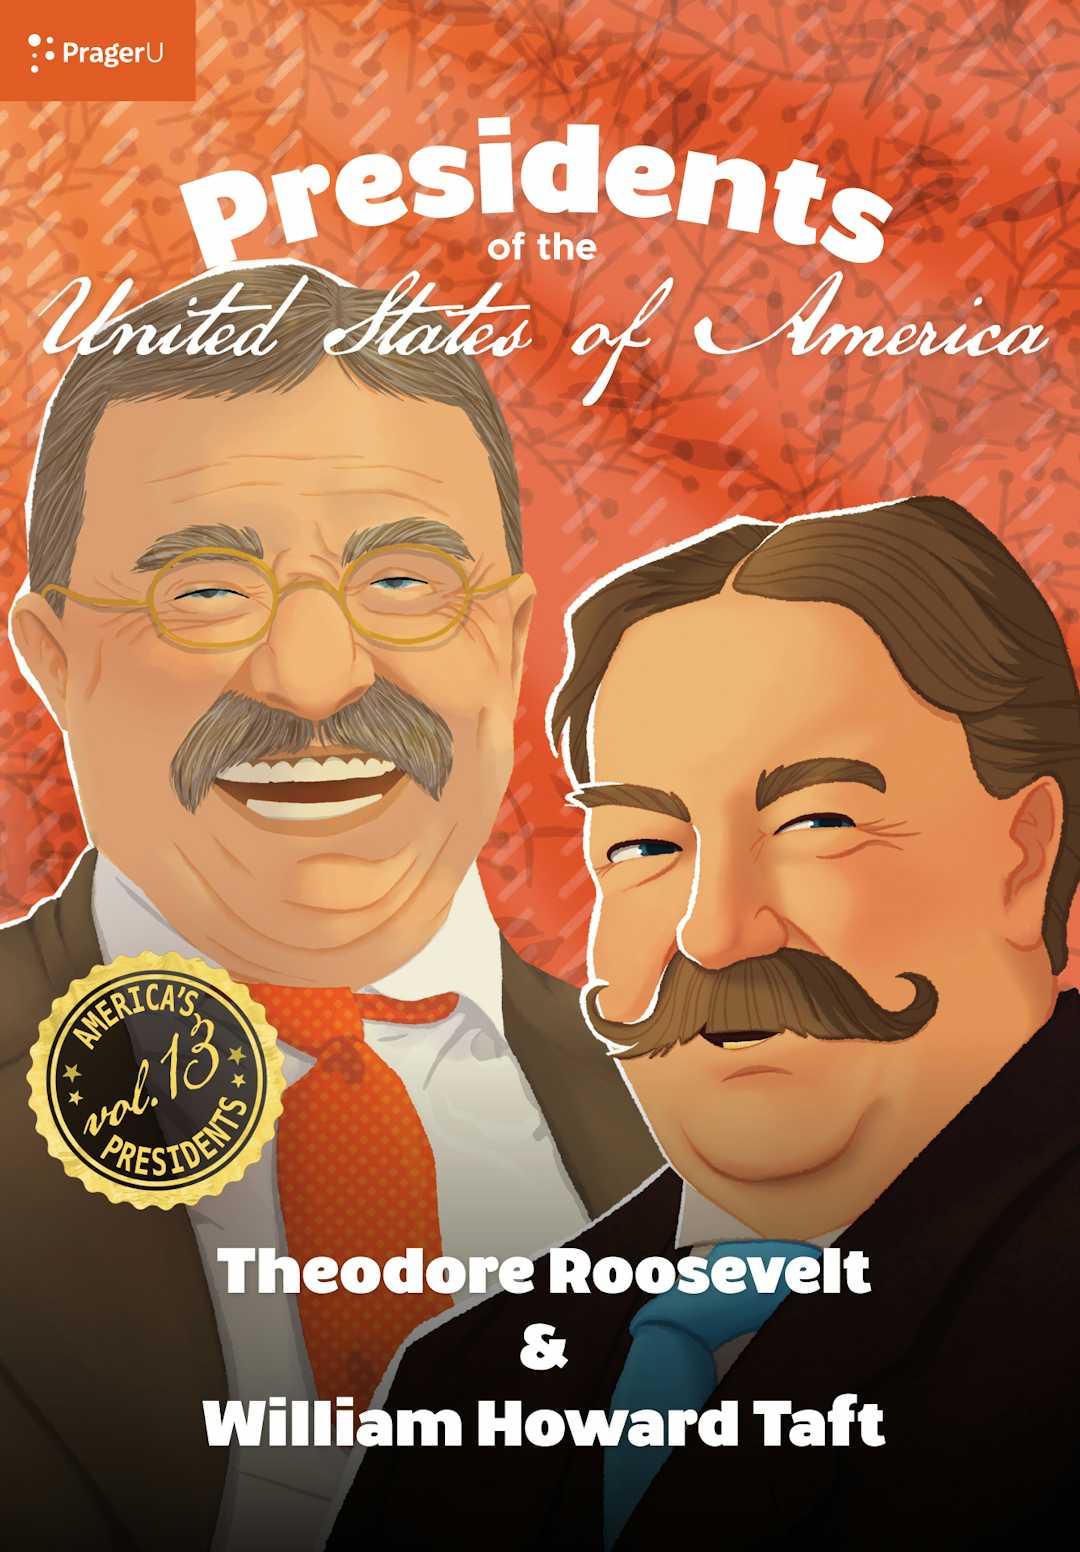 U.S. Presidents Volume 13: Theodore Roosevelt & William Howard Taft